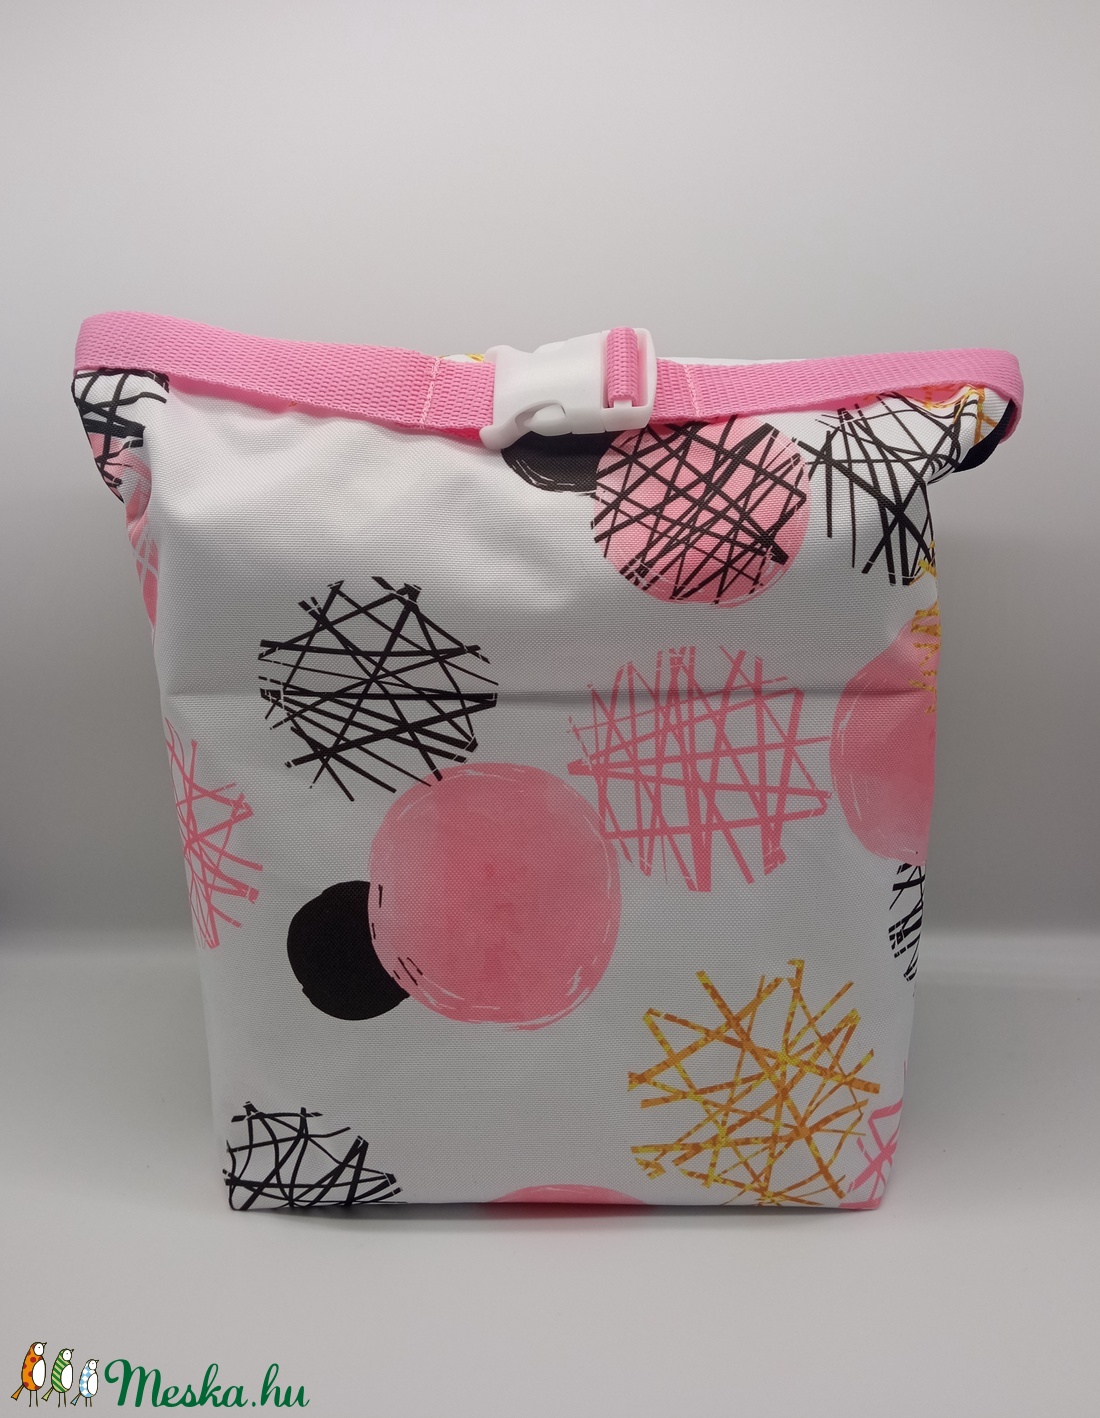 Uzsonnás táska - Roll top Lunch bag - Zero waste  - ebéd tasak, doboz - ebéd tasak, doboz - Meska.hu